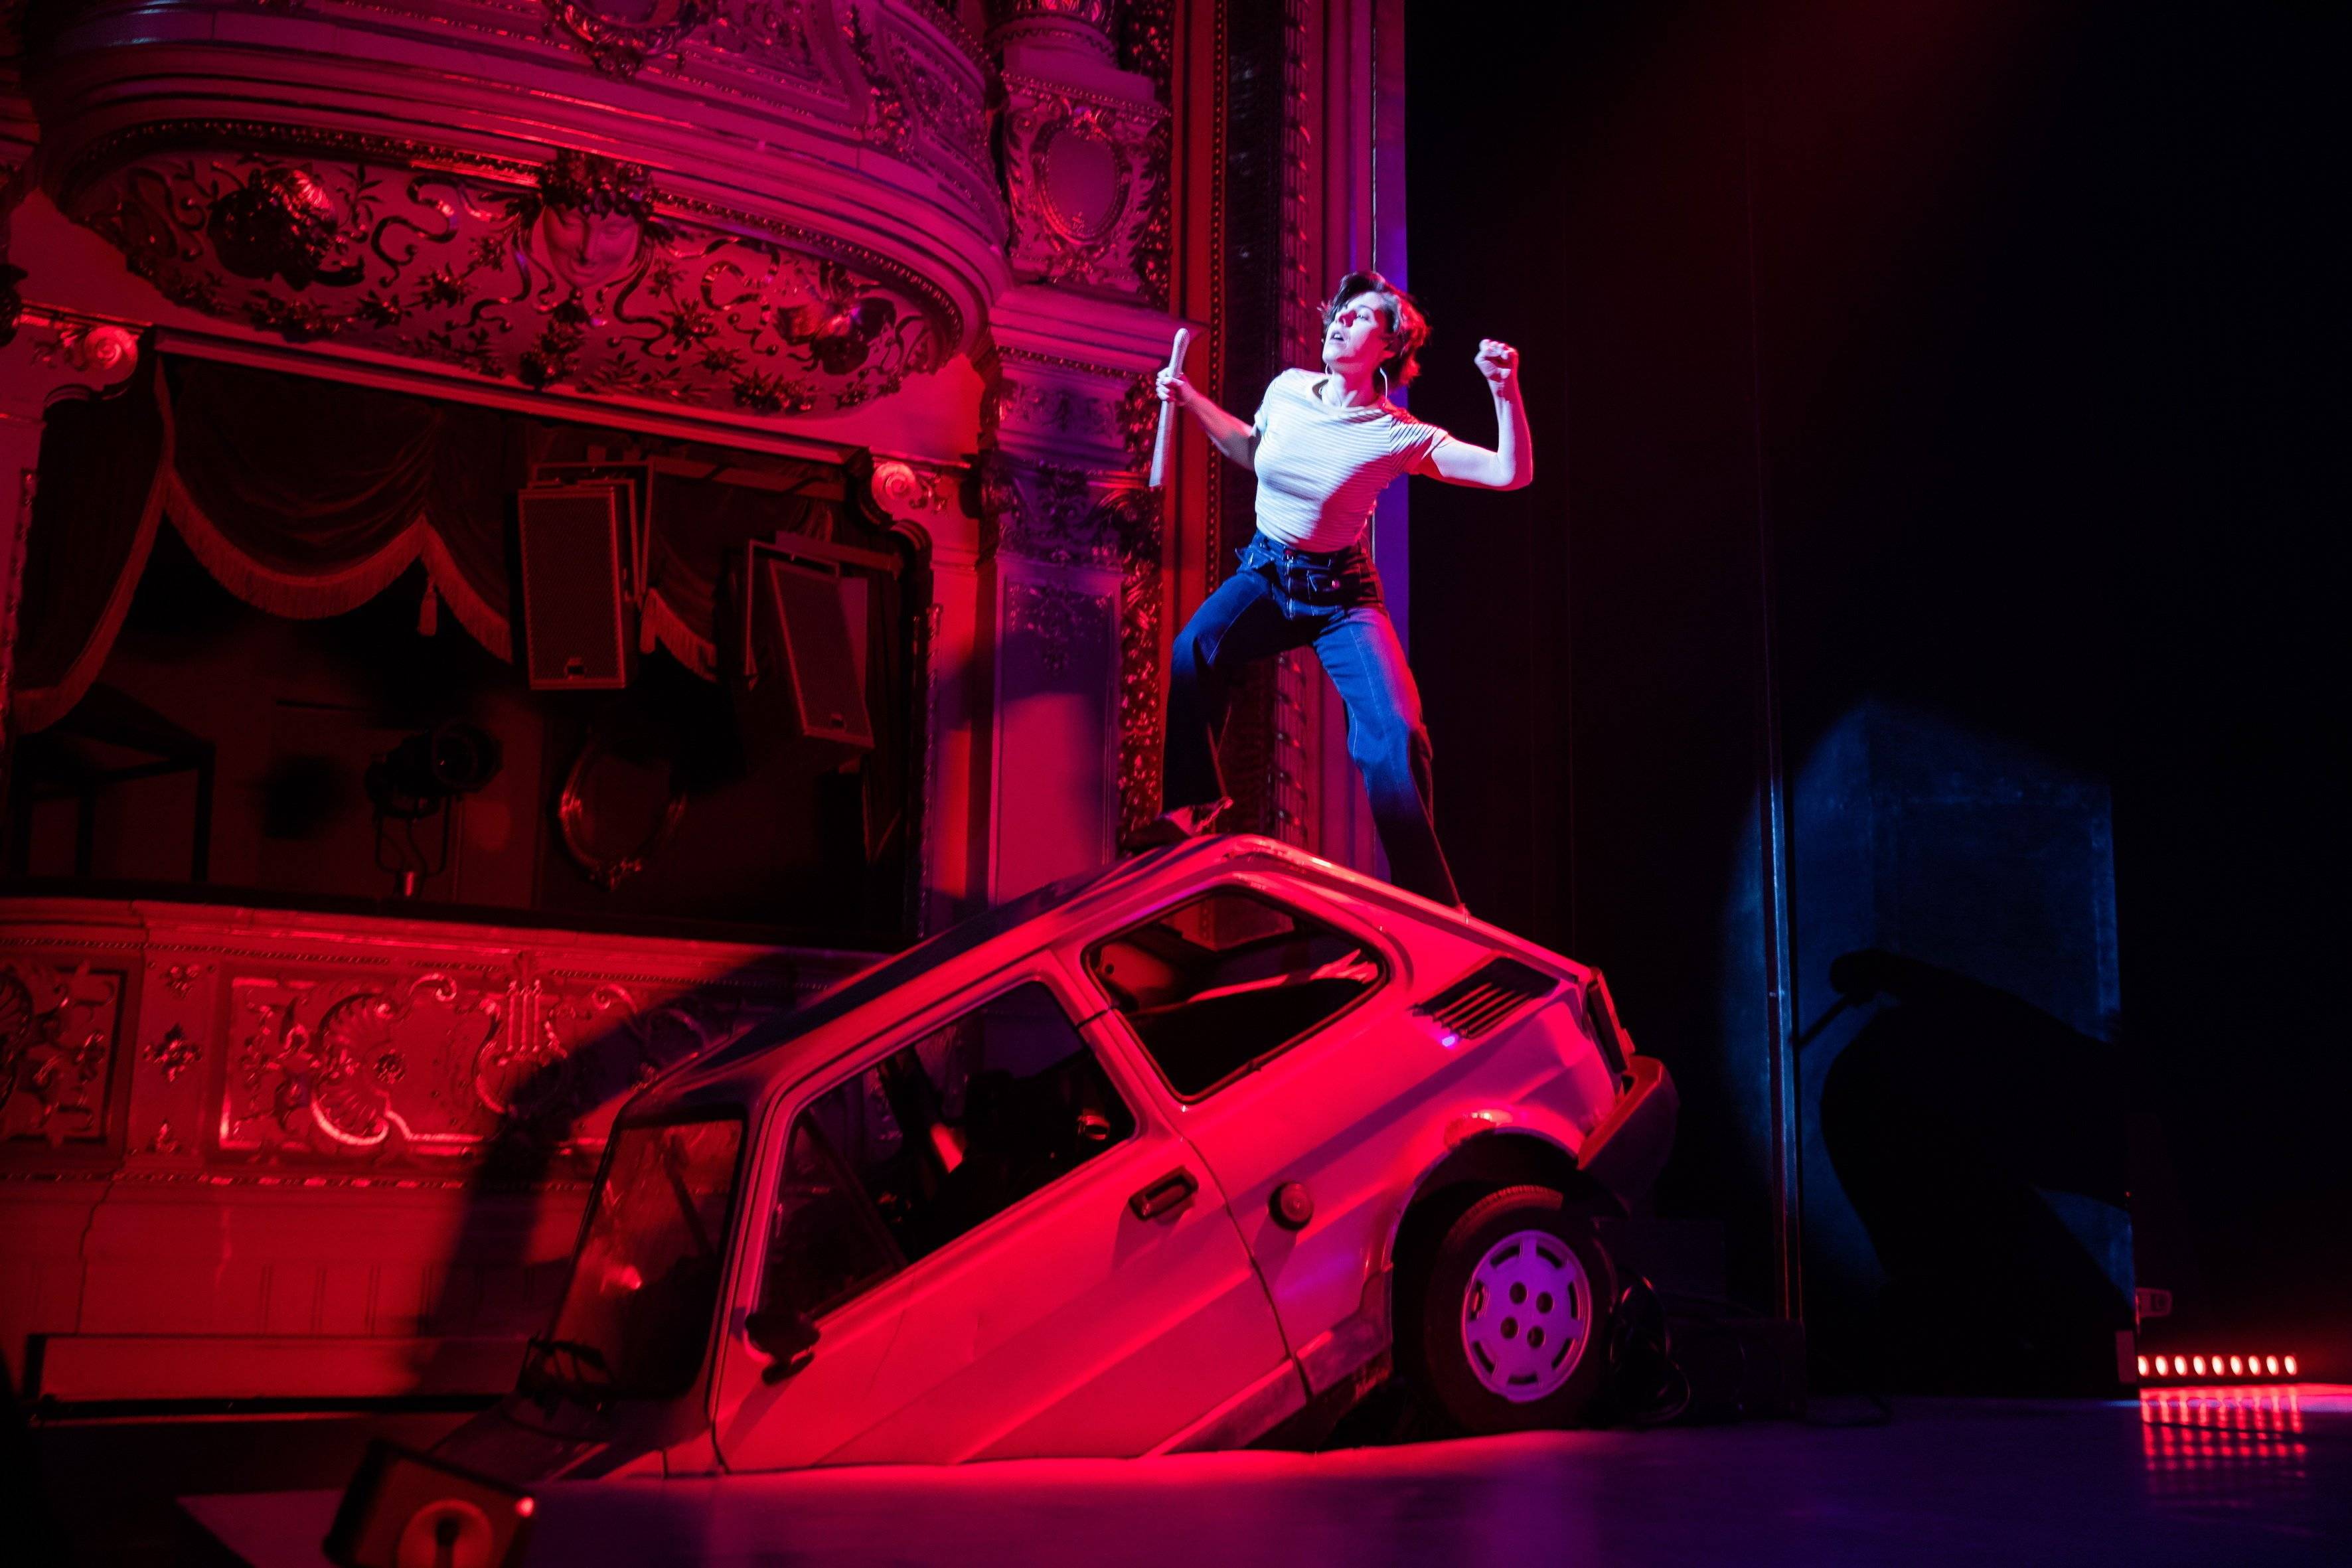 Aktorka stoi na przewróconym małym fiacie, który jest elementem scenografii teatralnej, w tle widać loże teatralne w czerwonym świetle. Musical 1989. Teatr TV